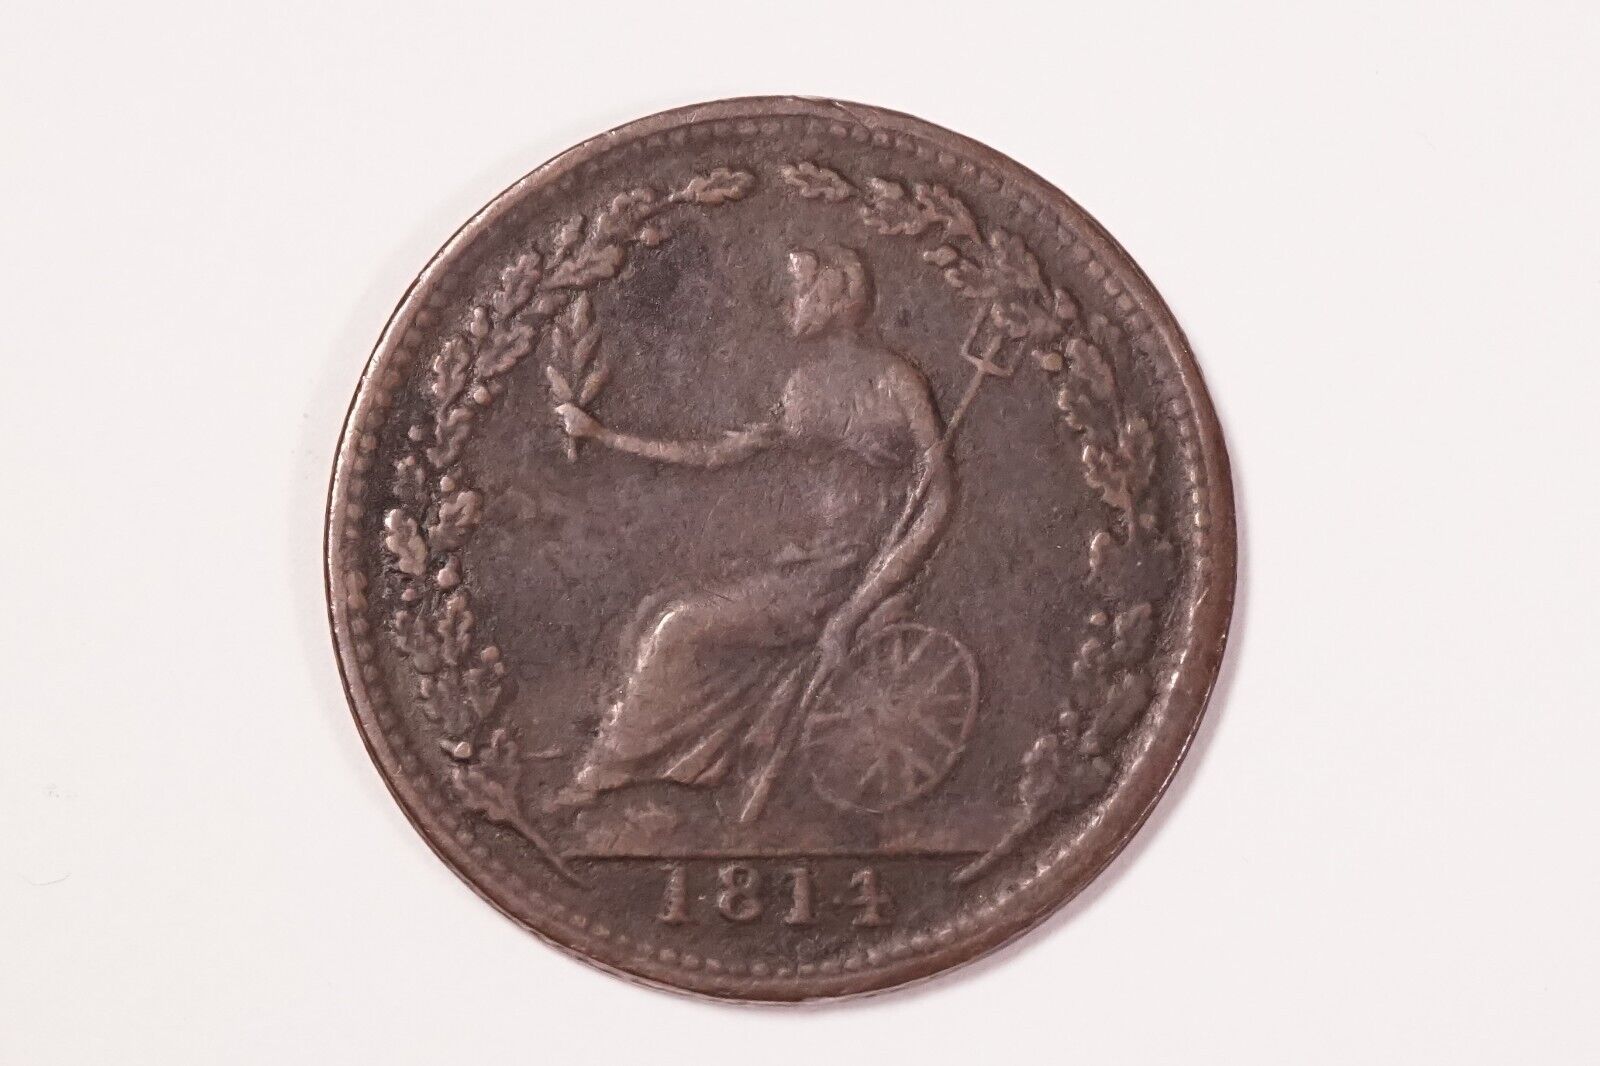 Canada 1814 Wellington Half Penny Token We-8a? #mon-1201